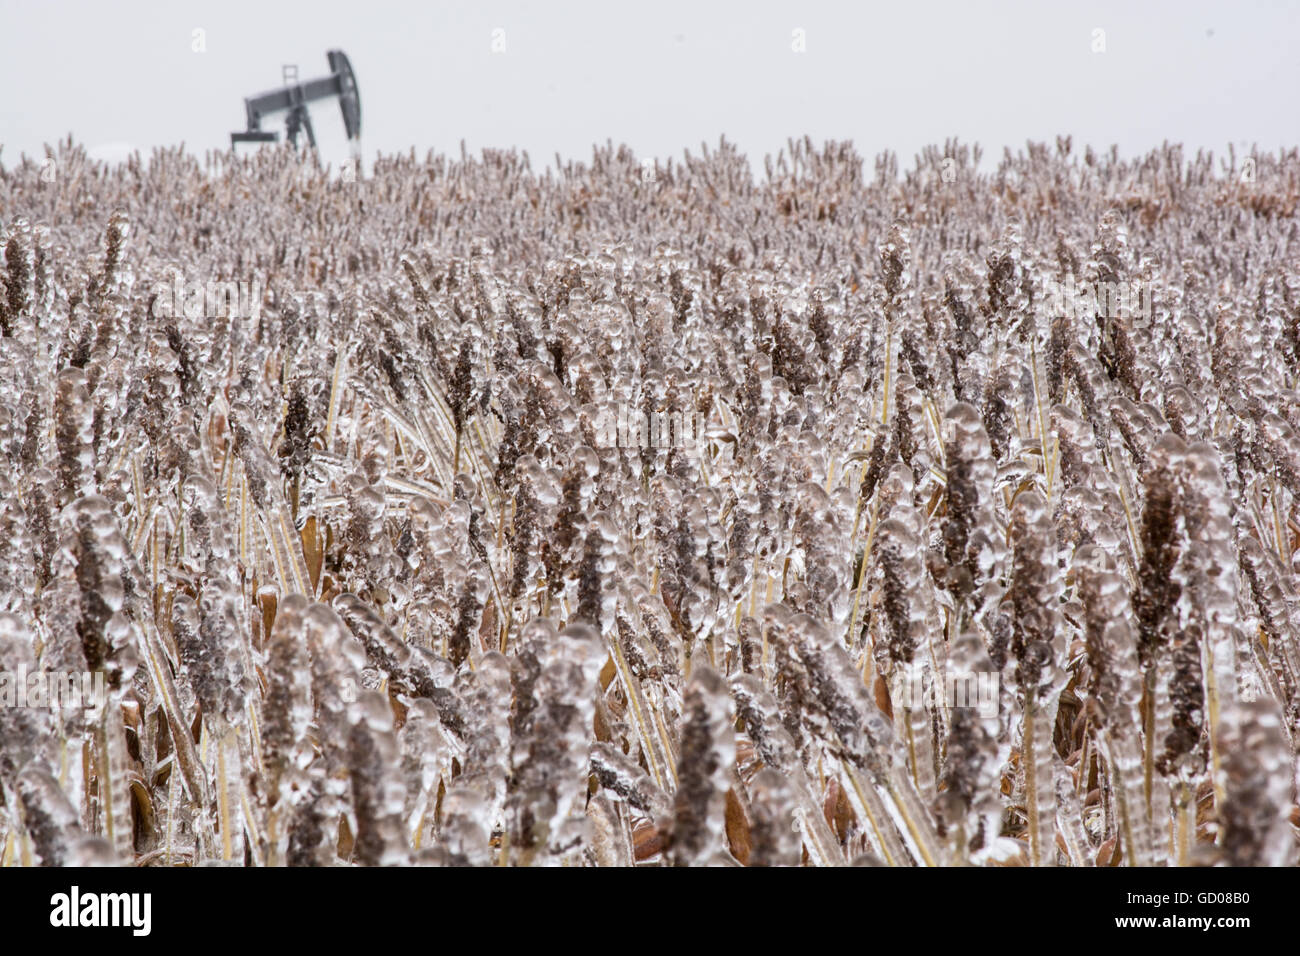 Oil pump in a field of frozen grain sorghum, or milo. Stock Photo